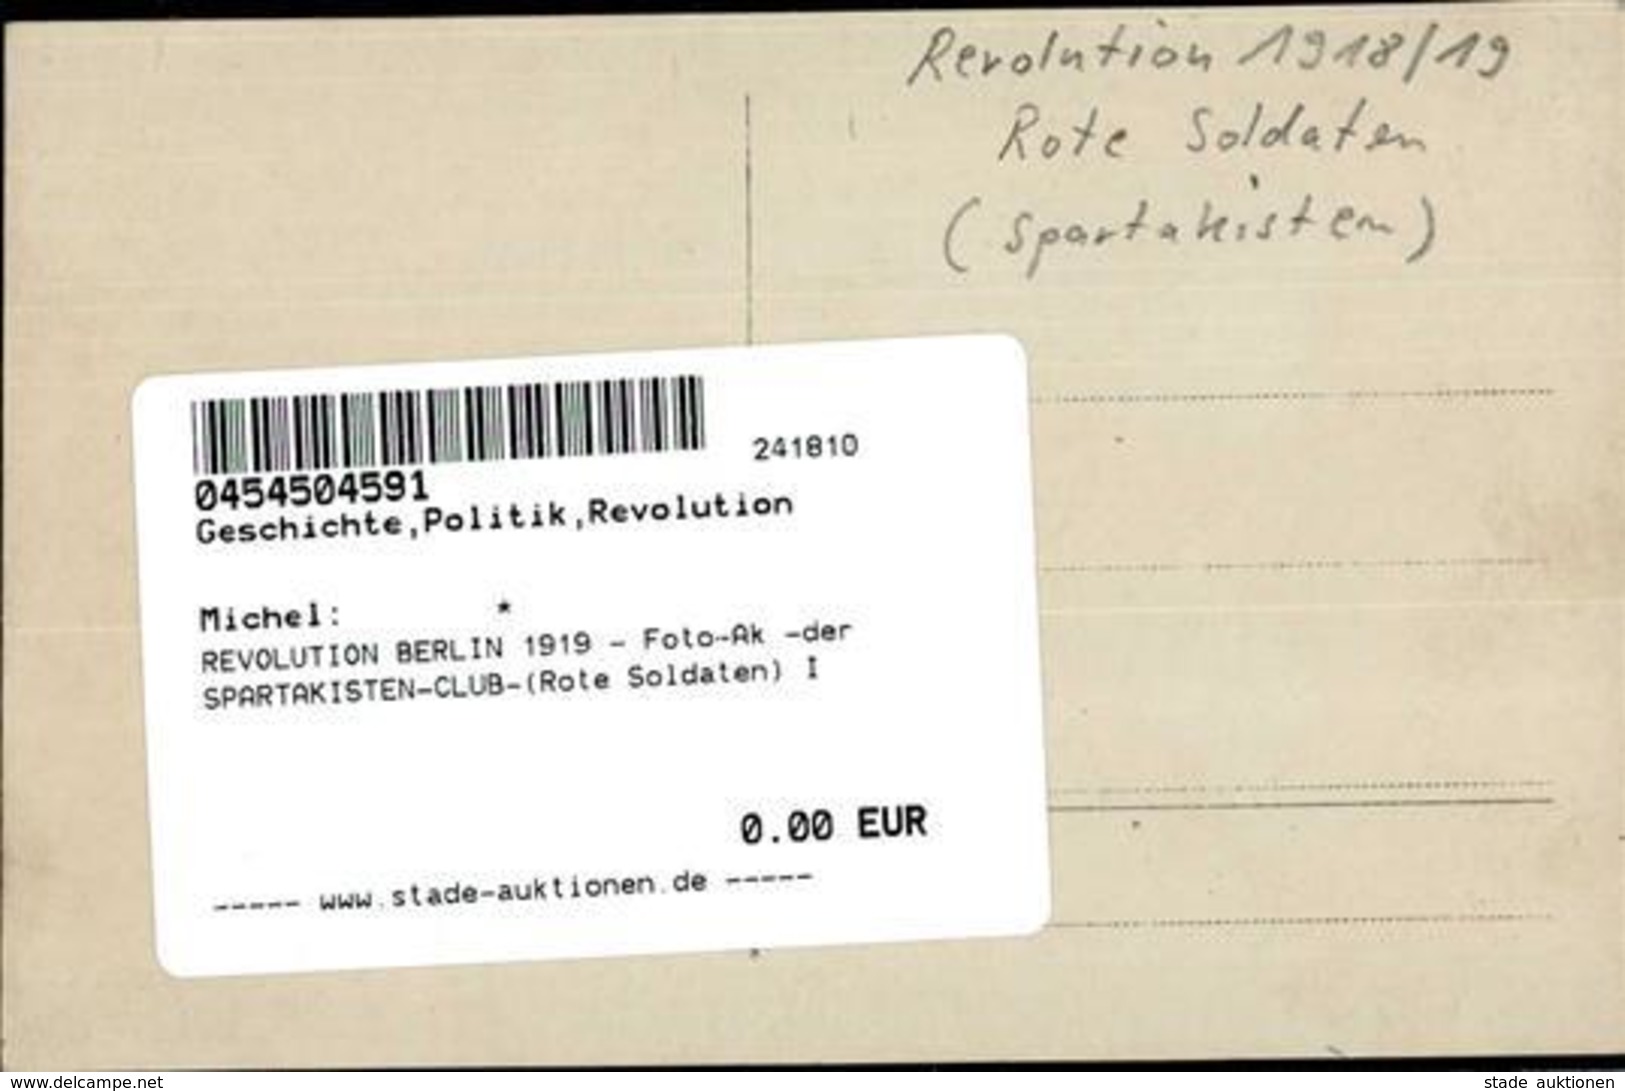 REVOLUTION BERLIN 1919 - Foto-Ak -der SPARTAKISTEN-CLUB-(Rote Soldaten) I - Krieg